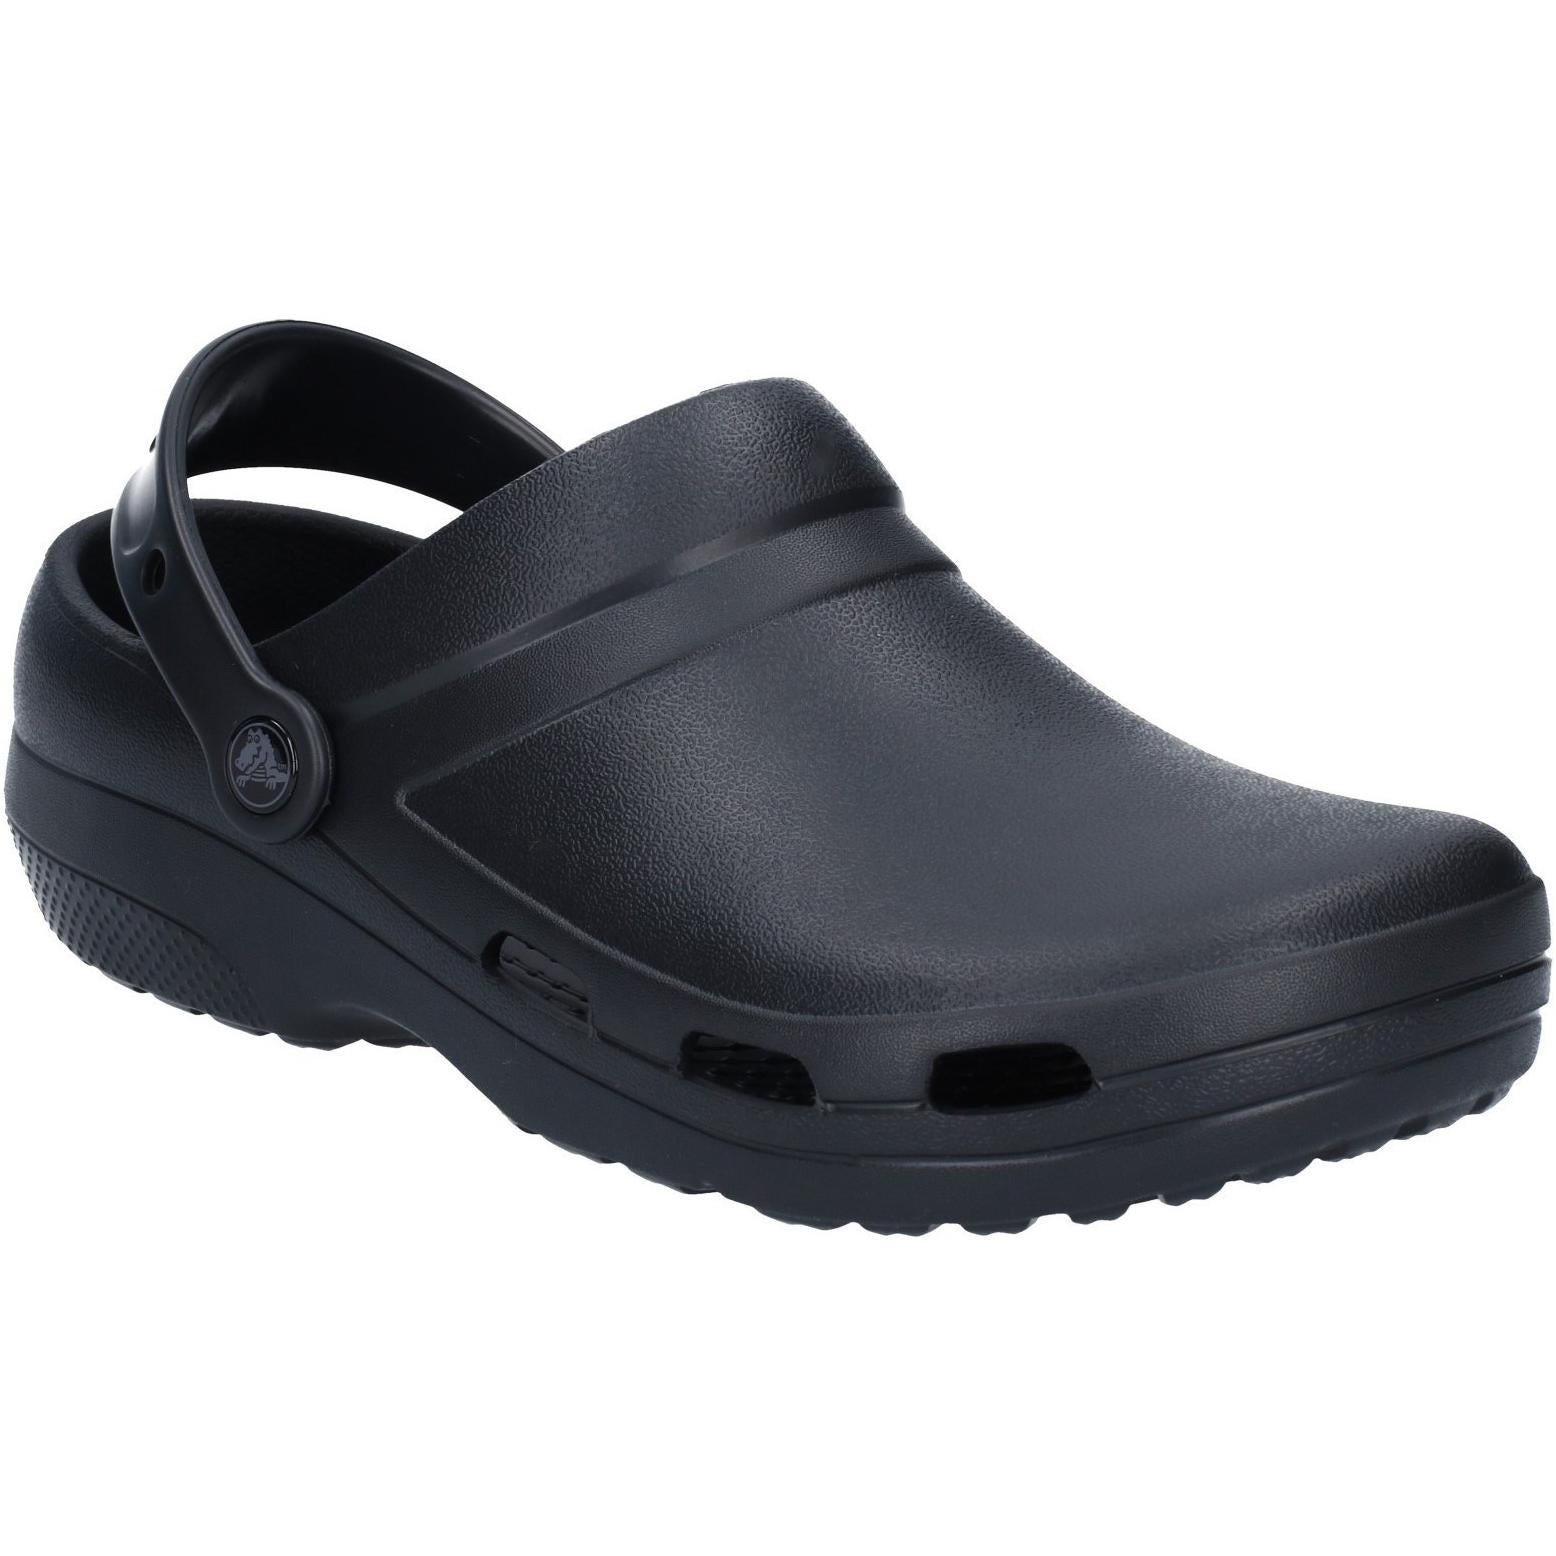 Crocs Specialist ll Vent Clog Sandals